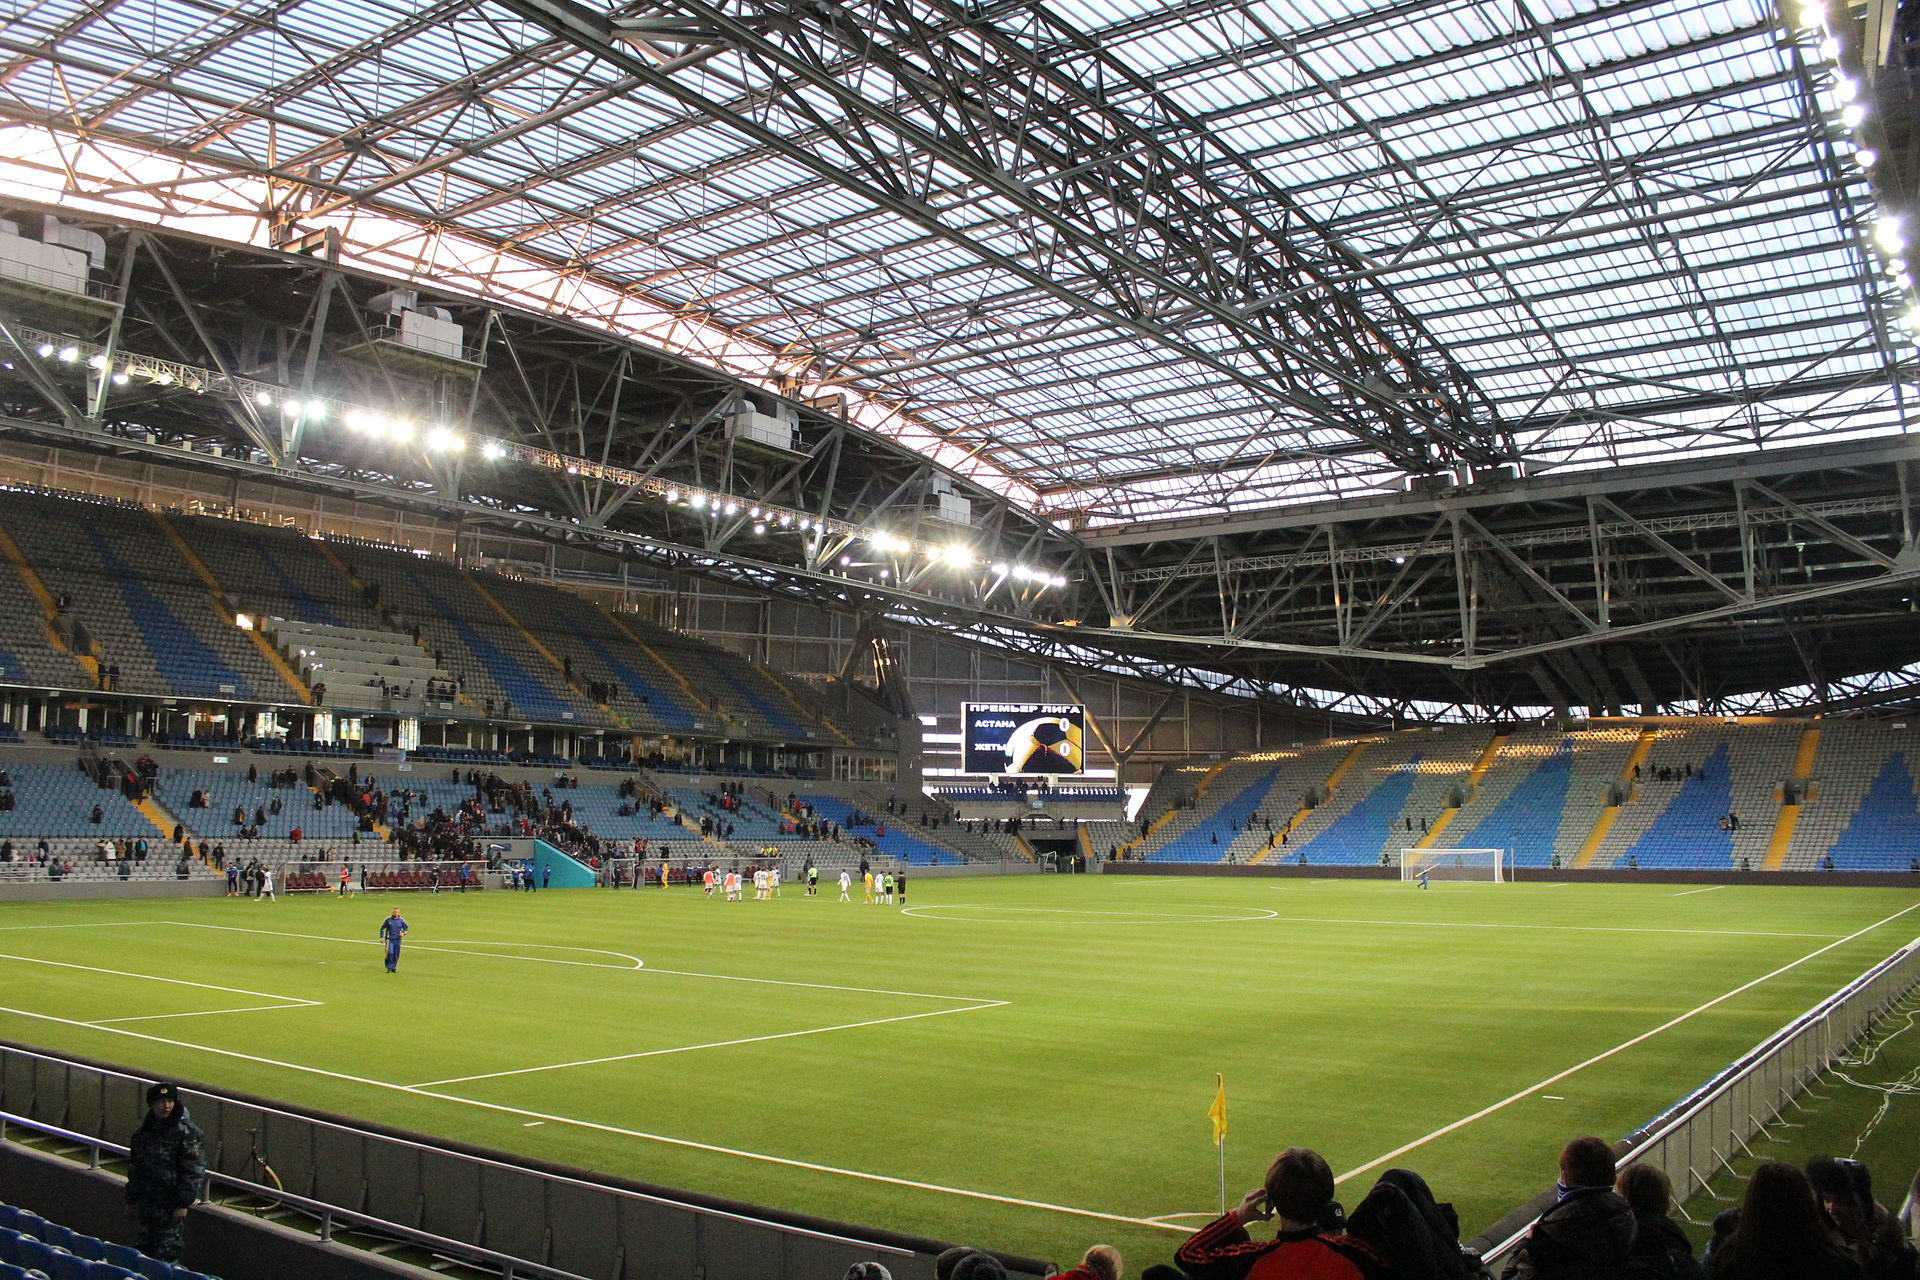 Astana Arena